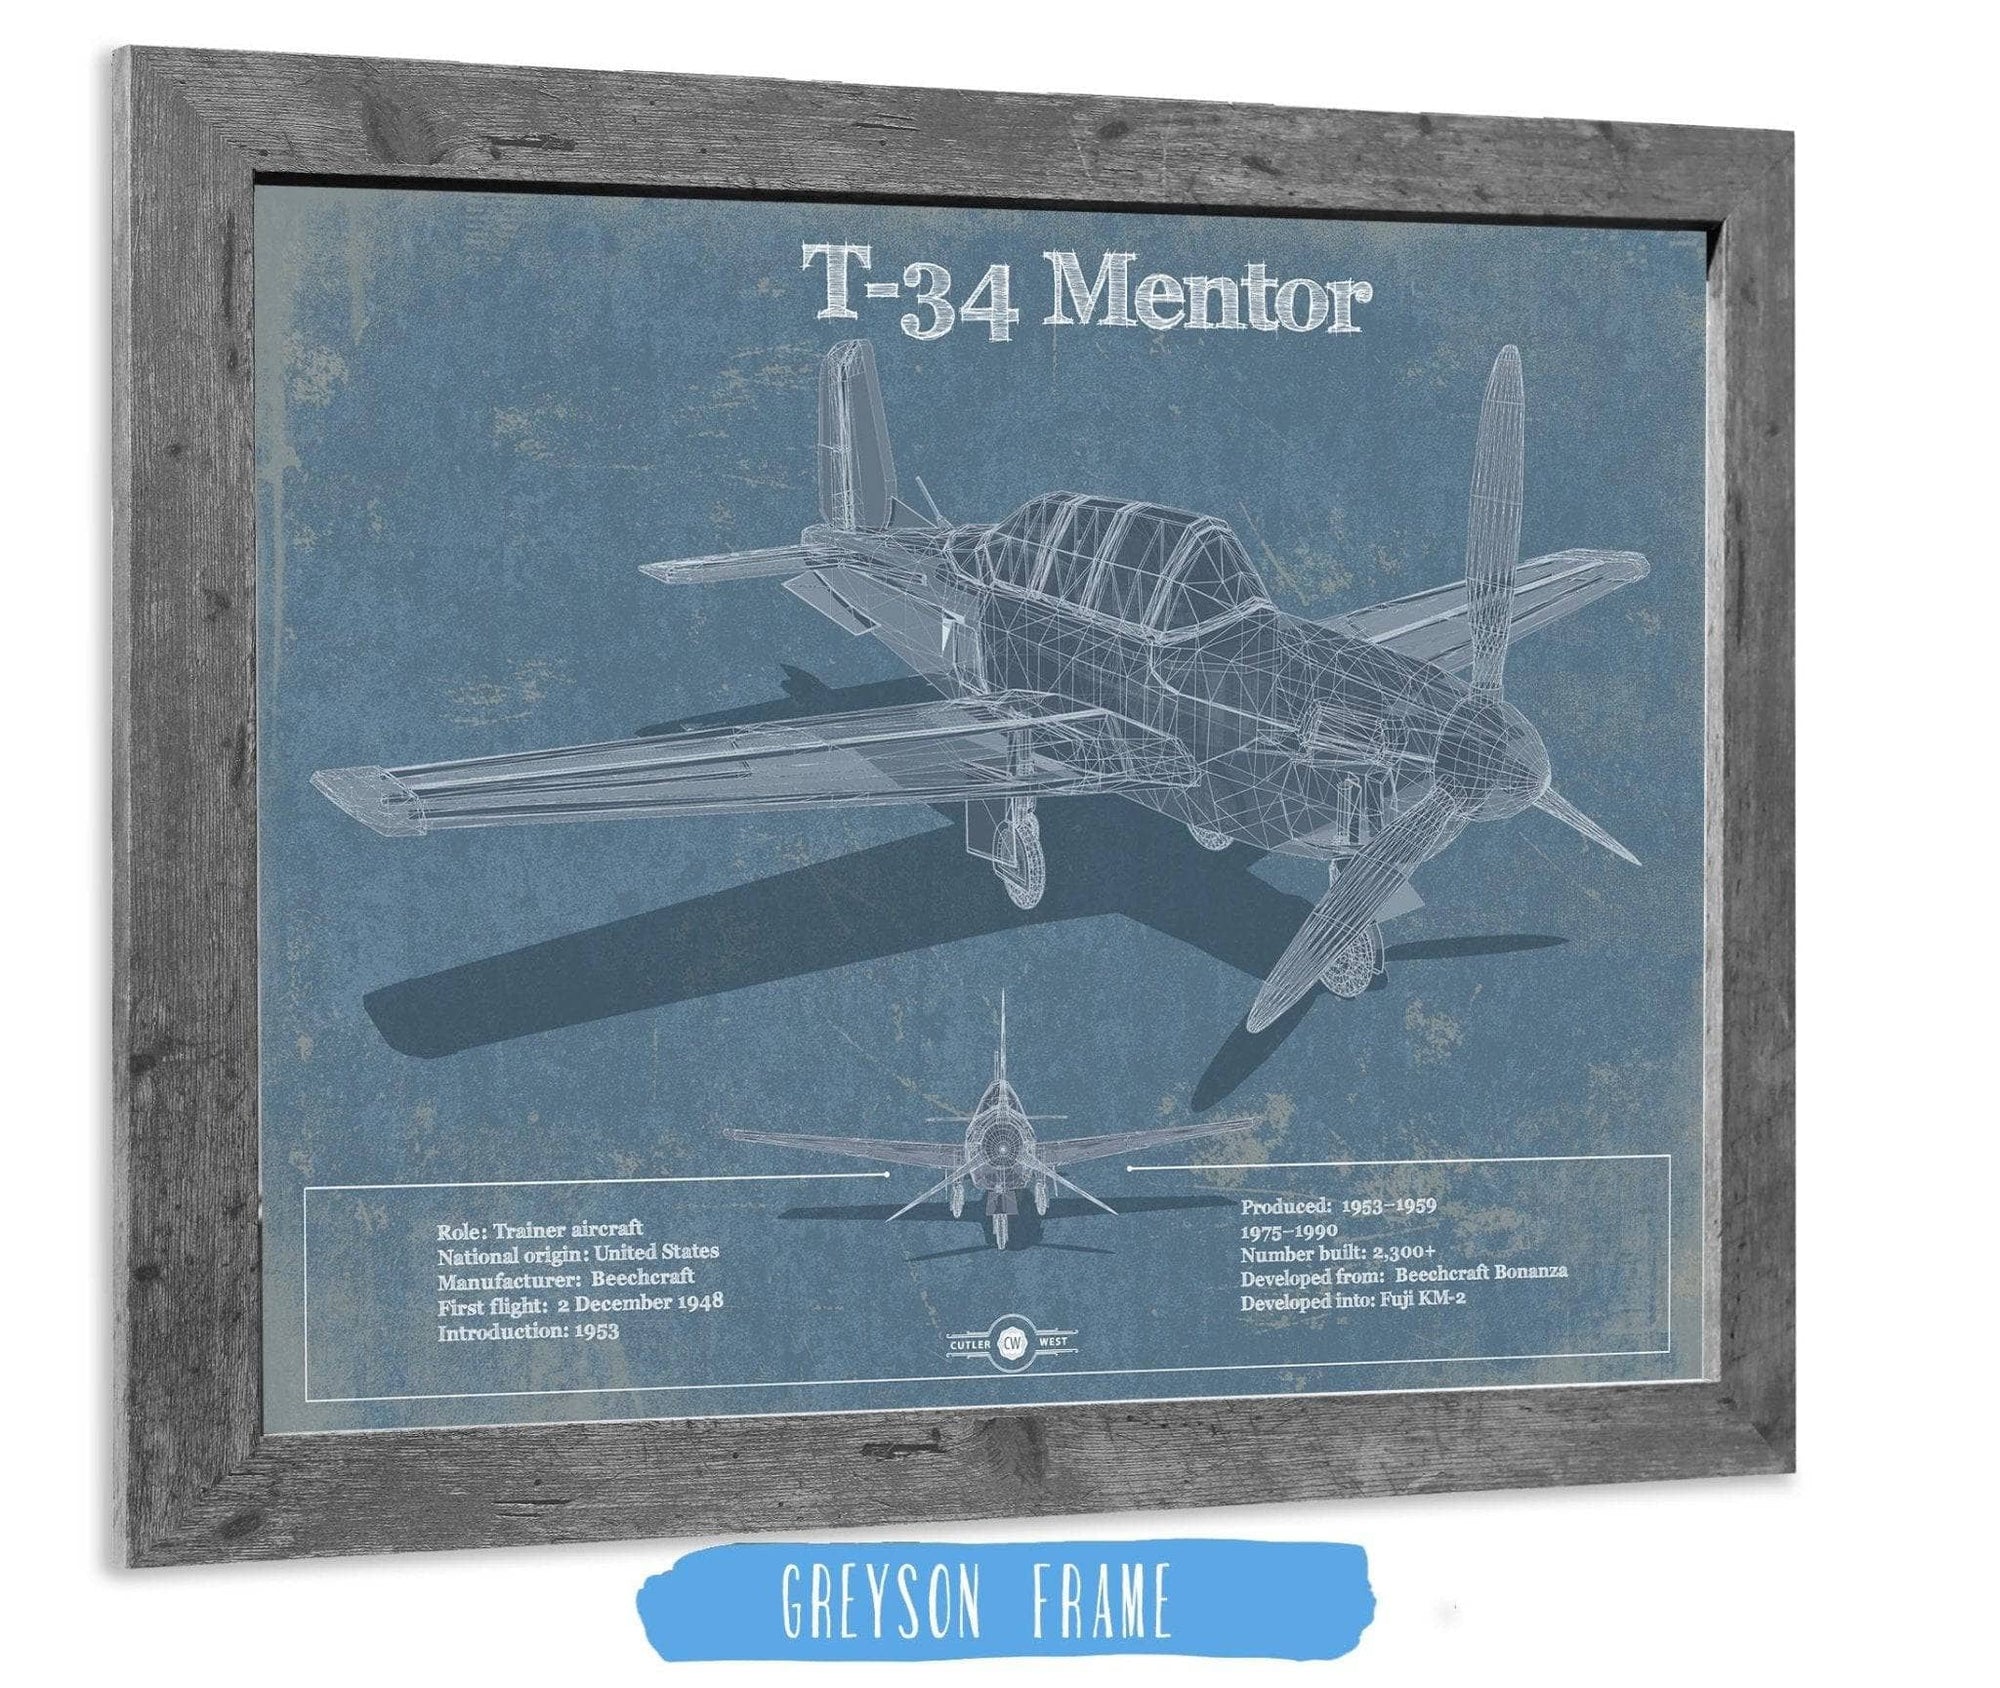 Cutler West Military Aircraft 14" x 11" / Greyson Frame T-34 Mentor Aircraft Blueprint Original Military Wall Art 803177329_27311